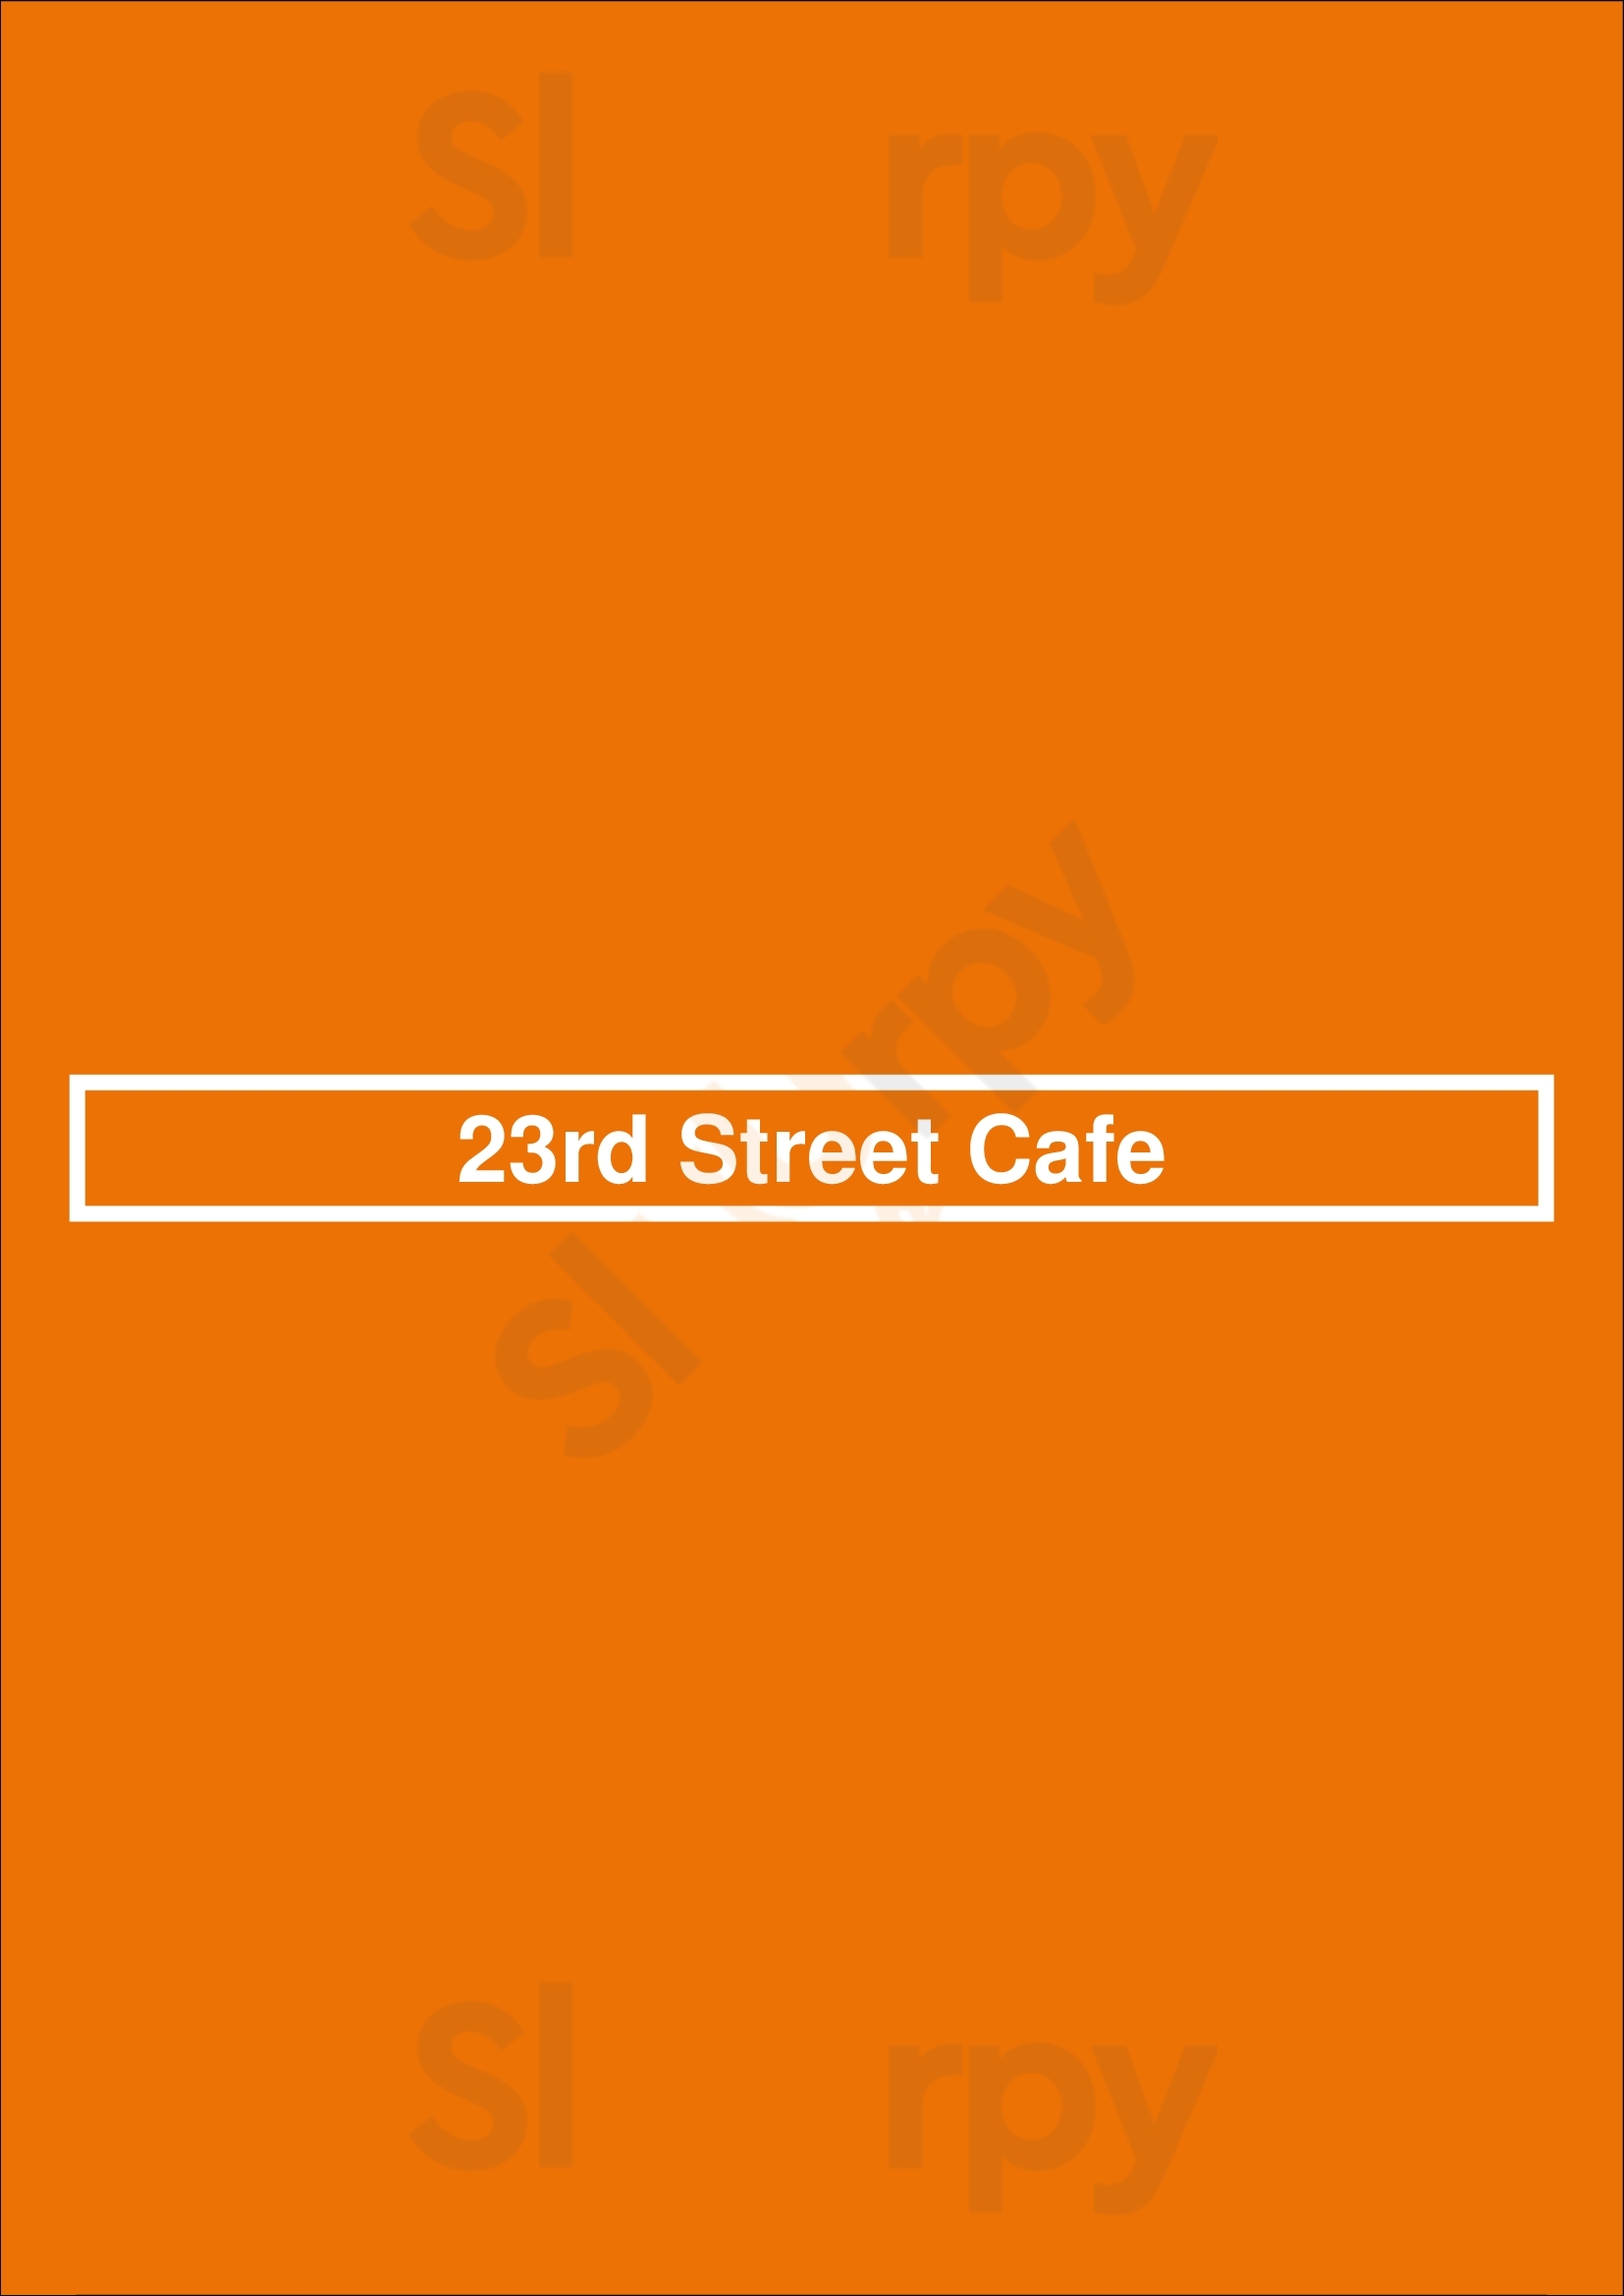 23rd Street Cafe Los Angeles Menu - 1